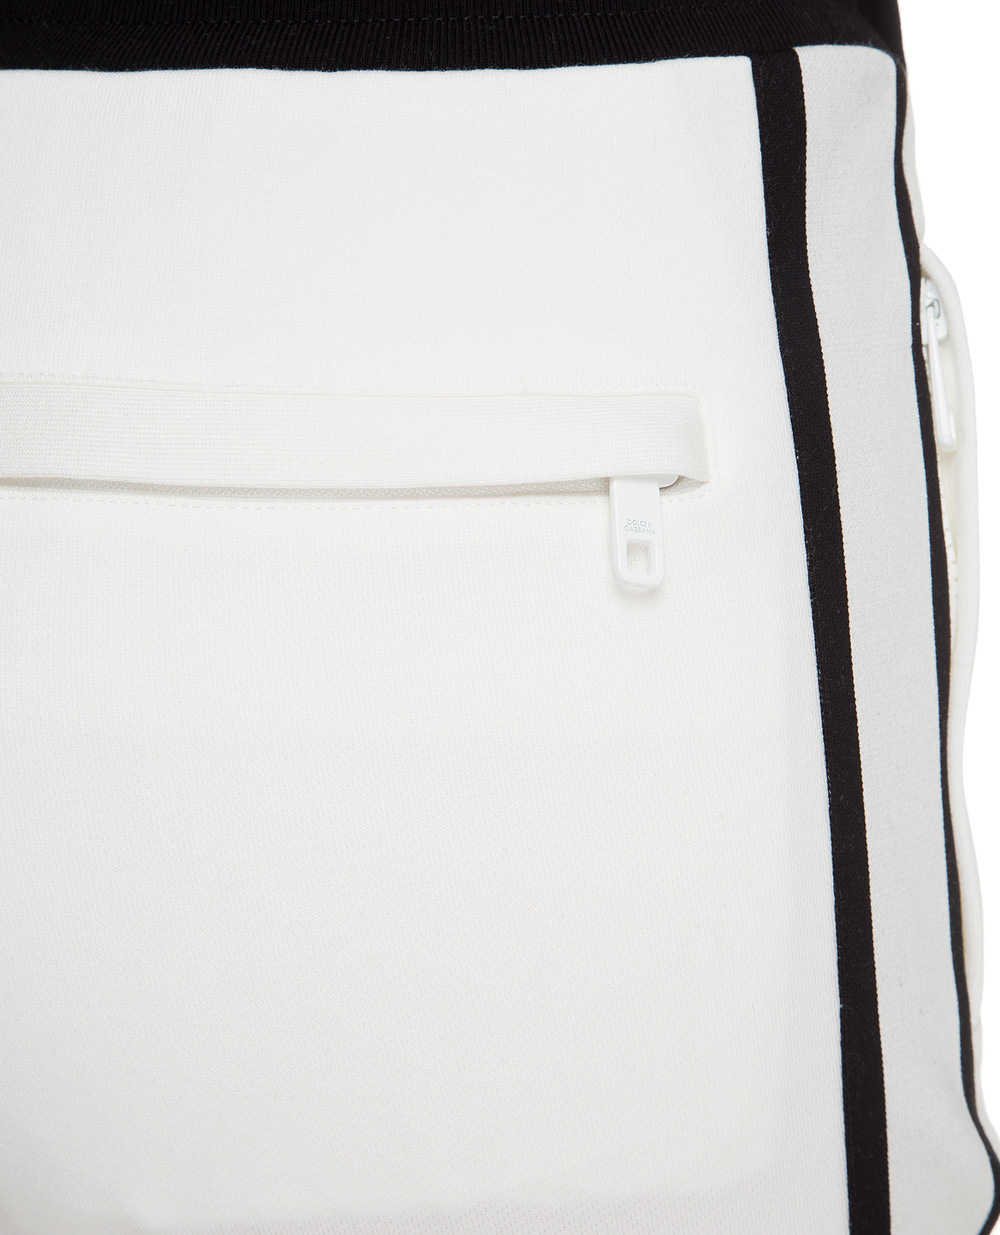 Спортивные брюки Millennials Star Dolce&Gabbana FTBM7T-HU7AL, белый цвет • Купить в интернет-магазине Kameron